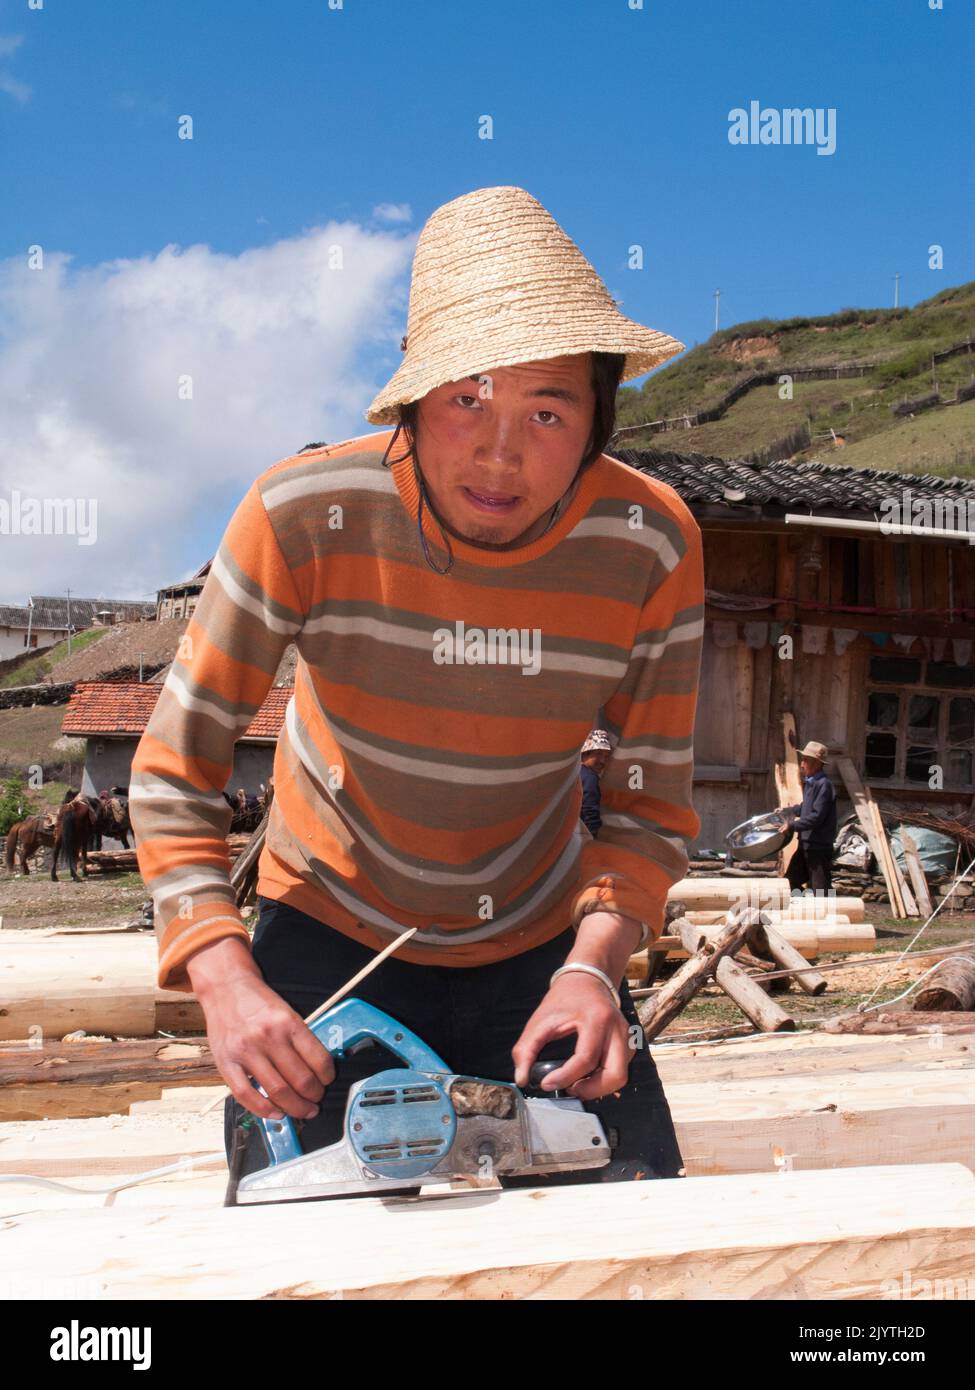 Ritratto di un uomo locale, un falegname che lavora con il legno e gli utensili elettrici, un uomo del patrimonio tibetano ma che vive in Cina, residenti di un piccolo villaggio al di fuori della città antica di Songpan nella provincia settentrionale del Sichuan. PRC. Cina (126) Foto Stock